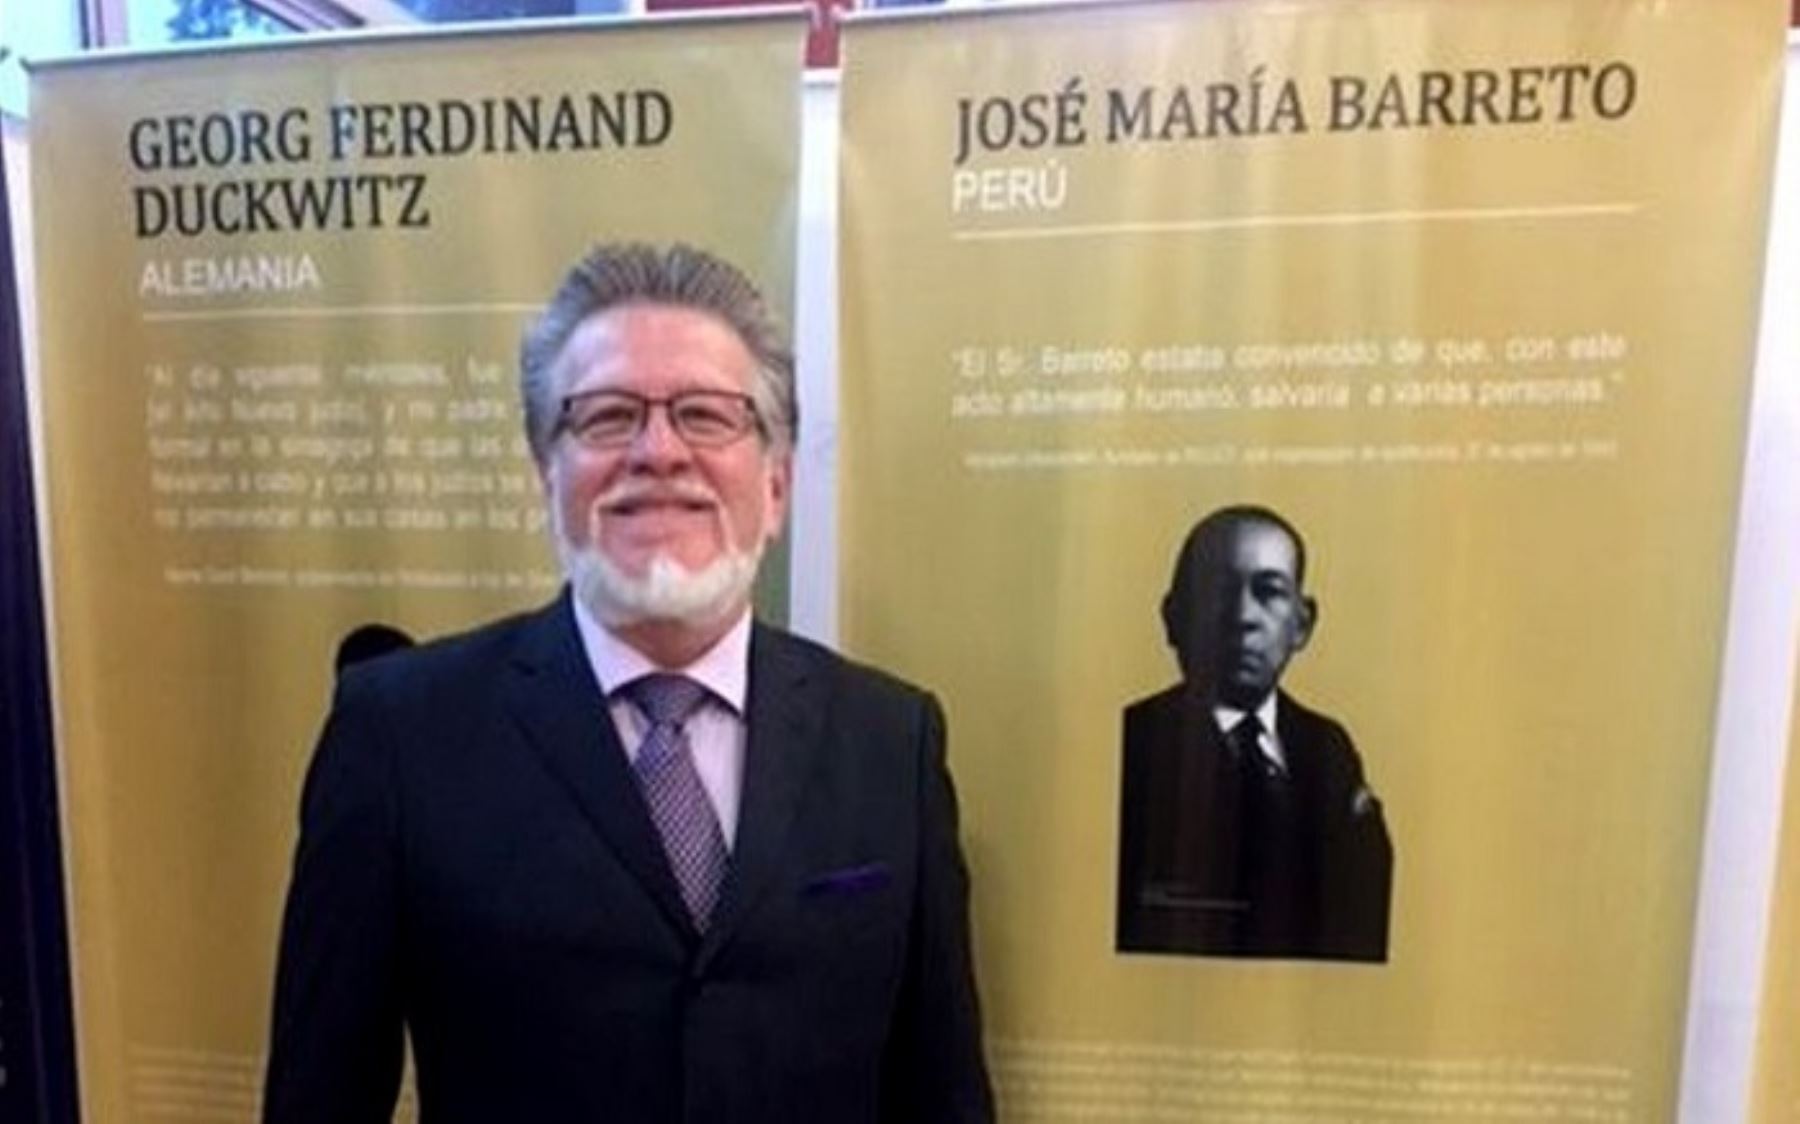 Embajador de Perú en Guatemala asistió a ceremonia donde se homenajeó a diplomático José María Barreto.